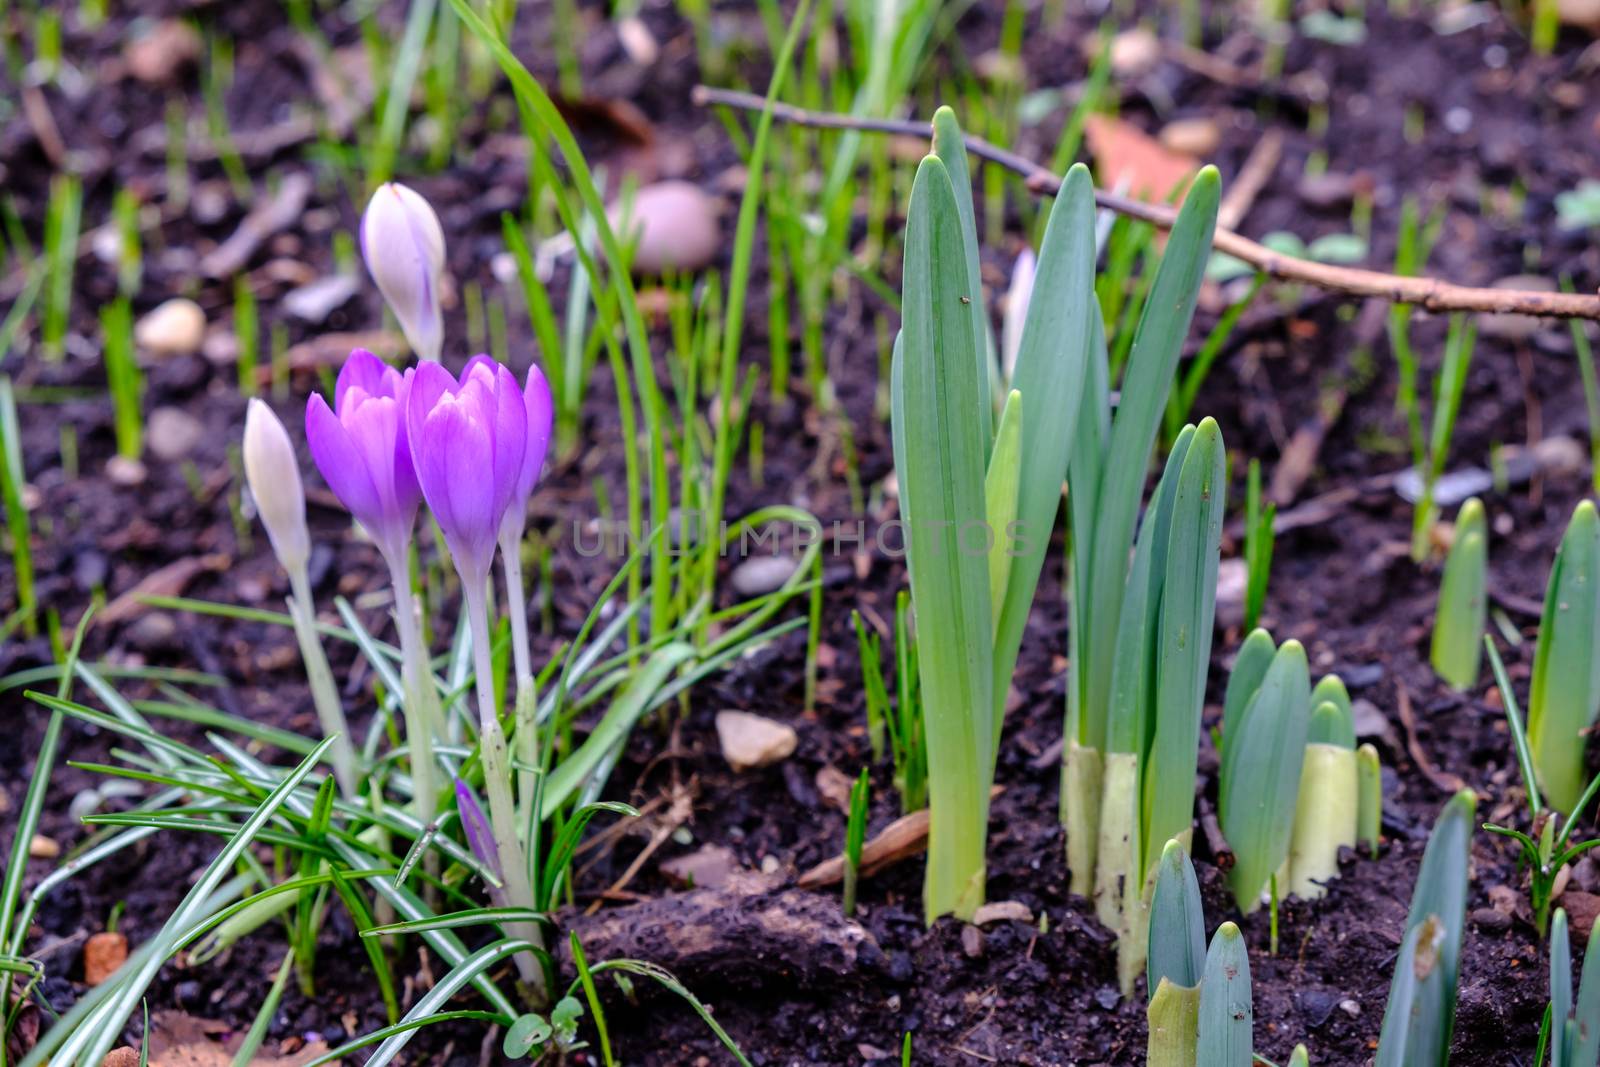 Spring flowers emerging at Birmingham Botanial Garden